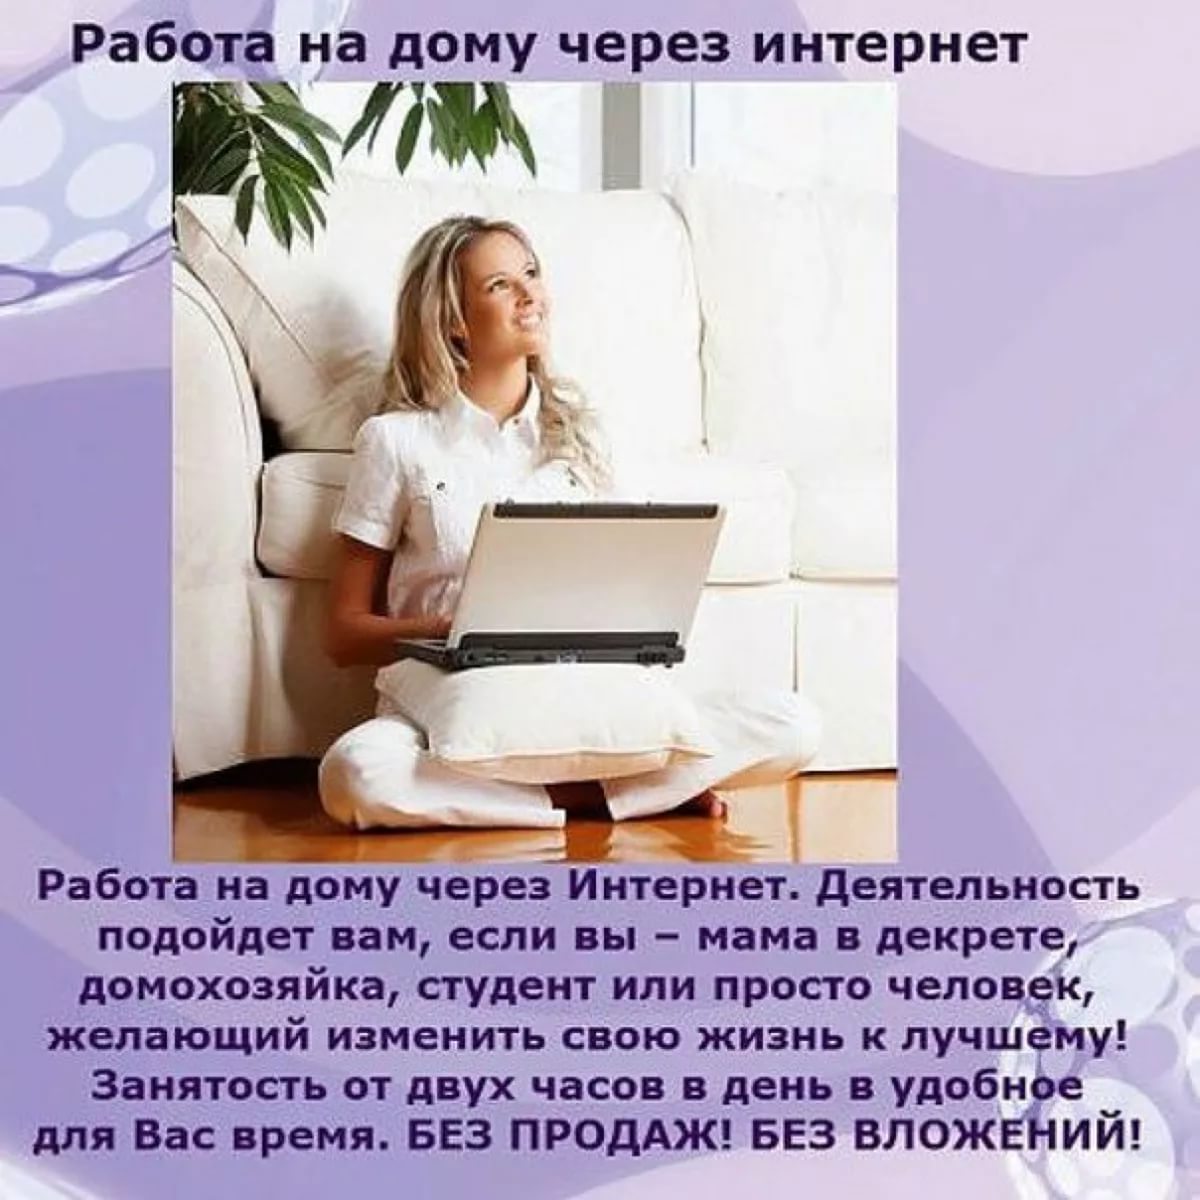 Работа онлайн на дому в интернете без вложений с ежедневным доходом: Работа в интернете без вложений и обмана оплата каждый день